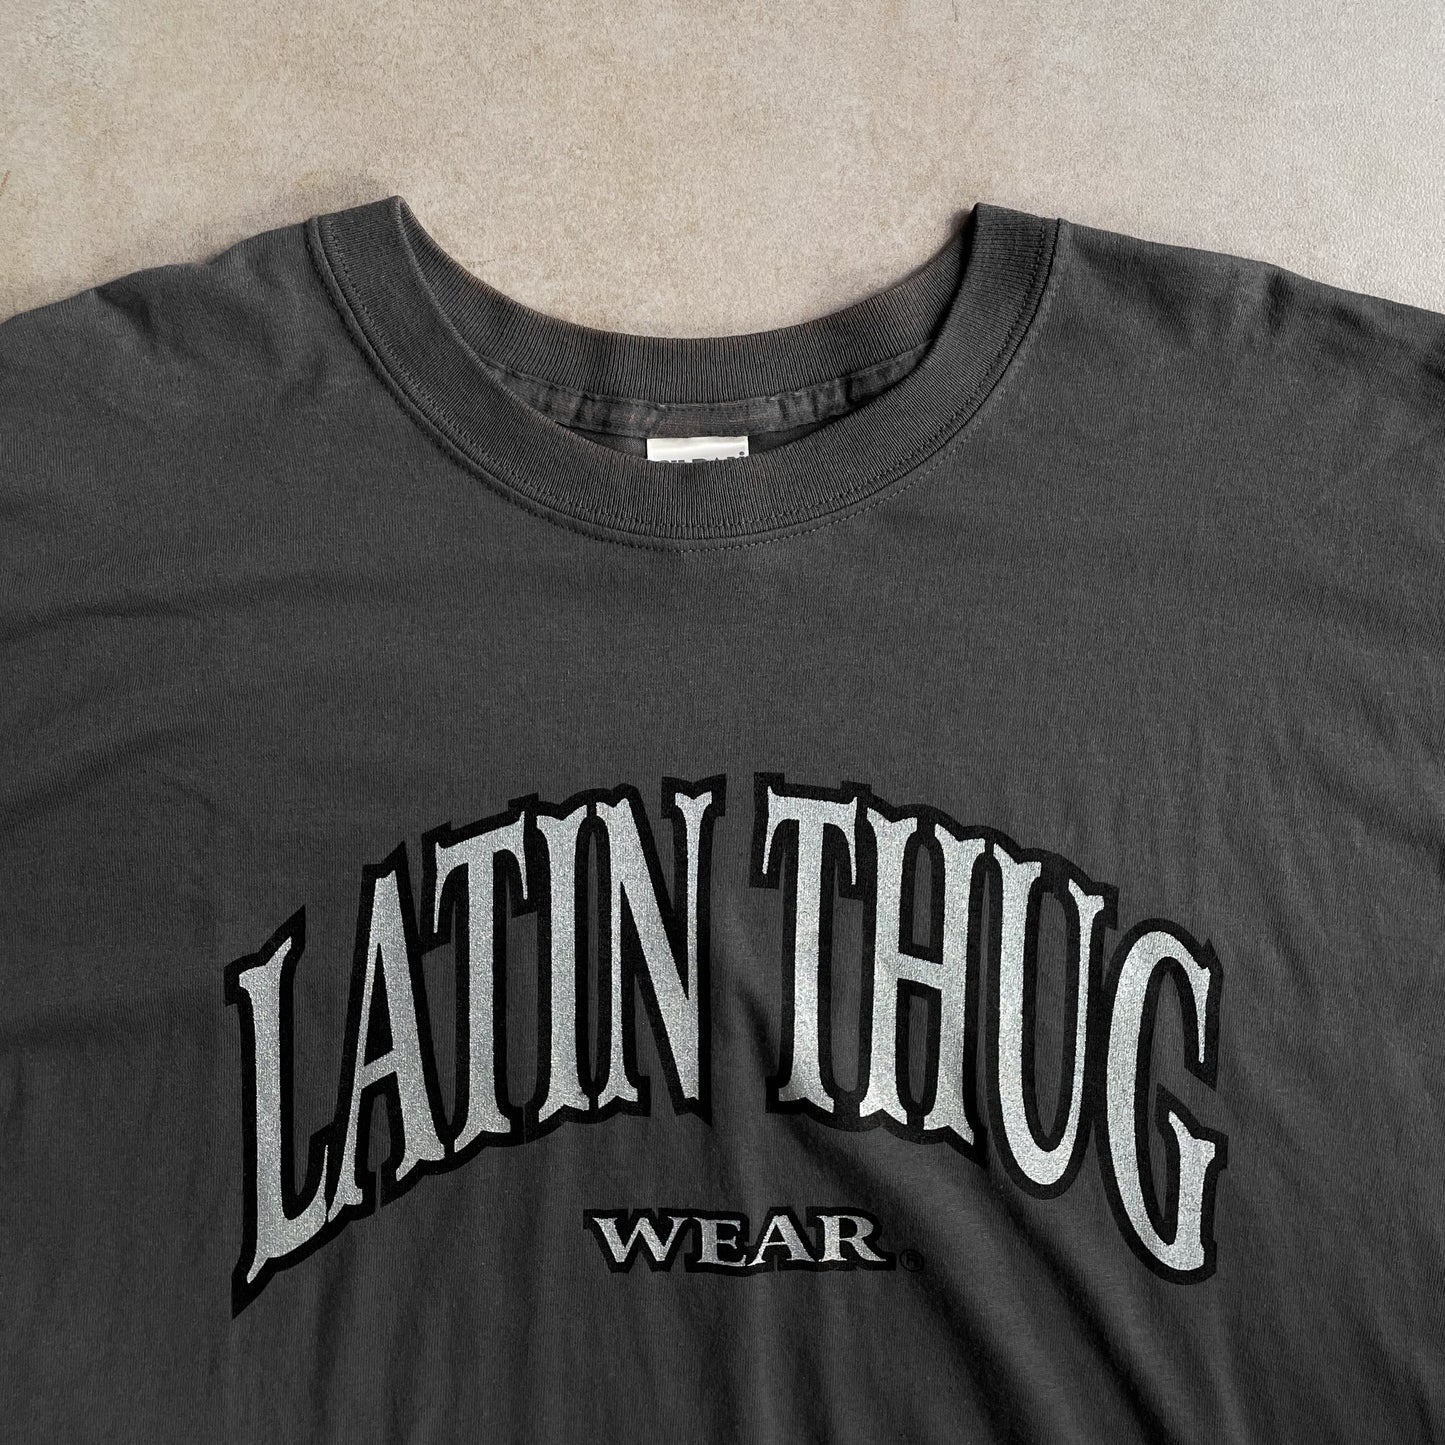 2000s Latin Thug Wear Grey Logo Tee - 2XL sullivansvintage